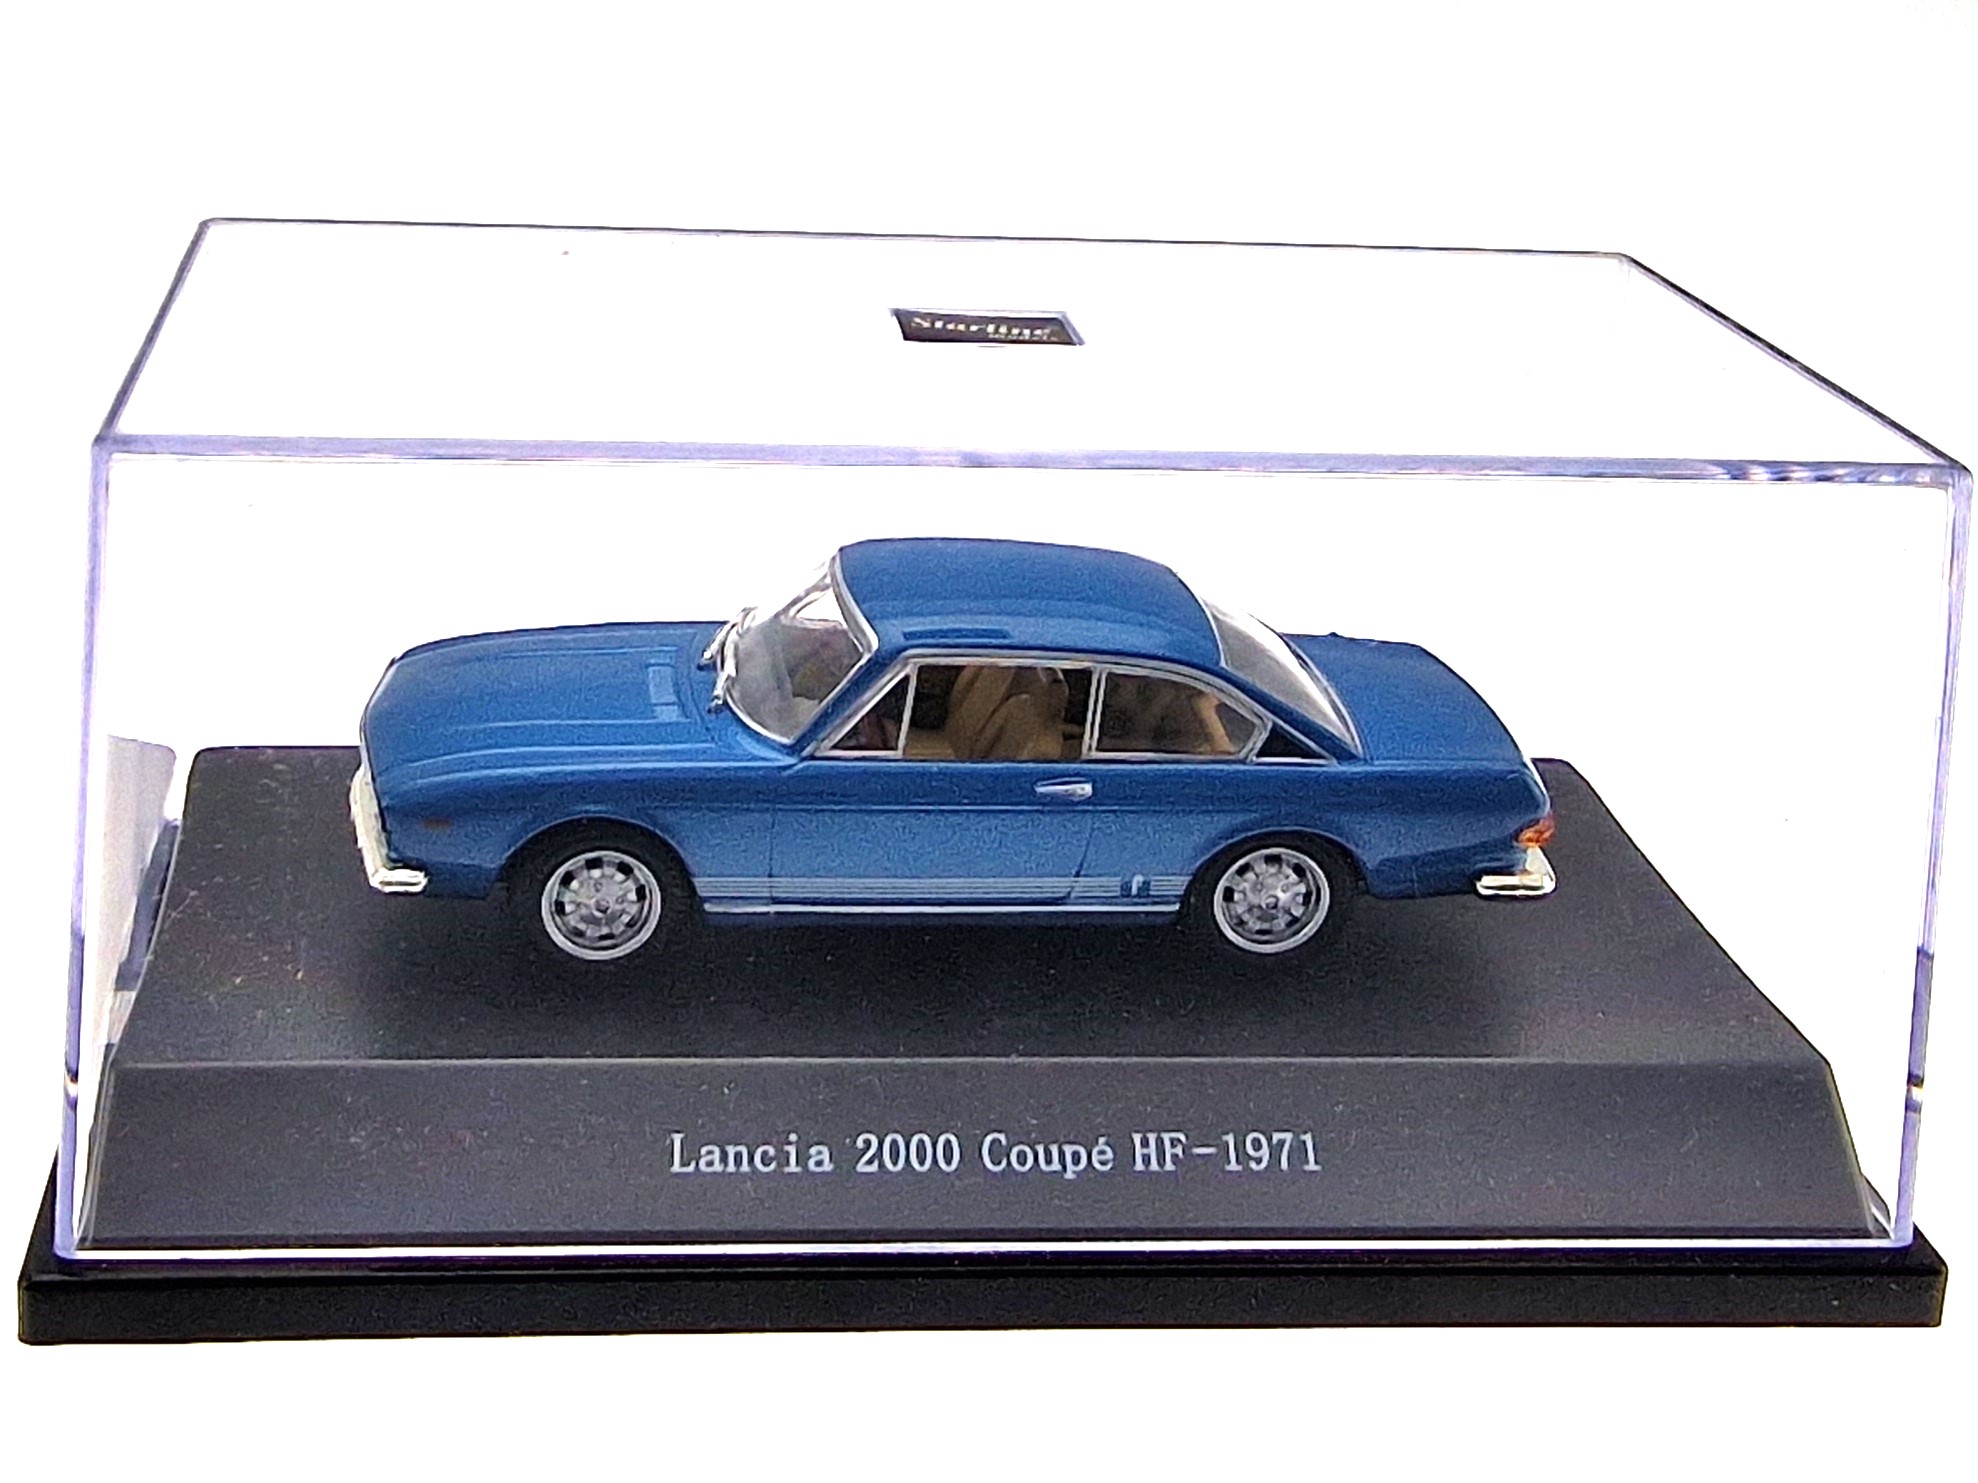 Lancia 2000 Coupé HF - 1971